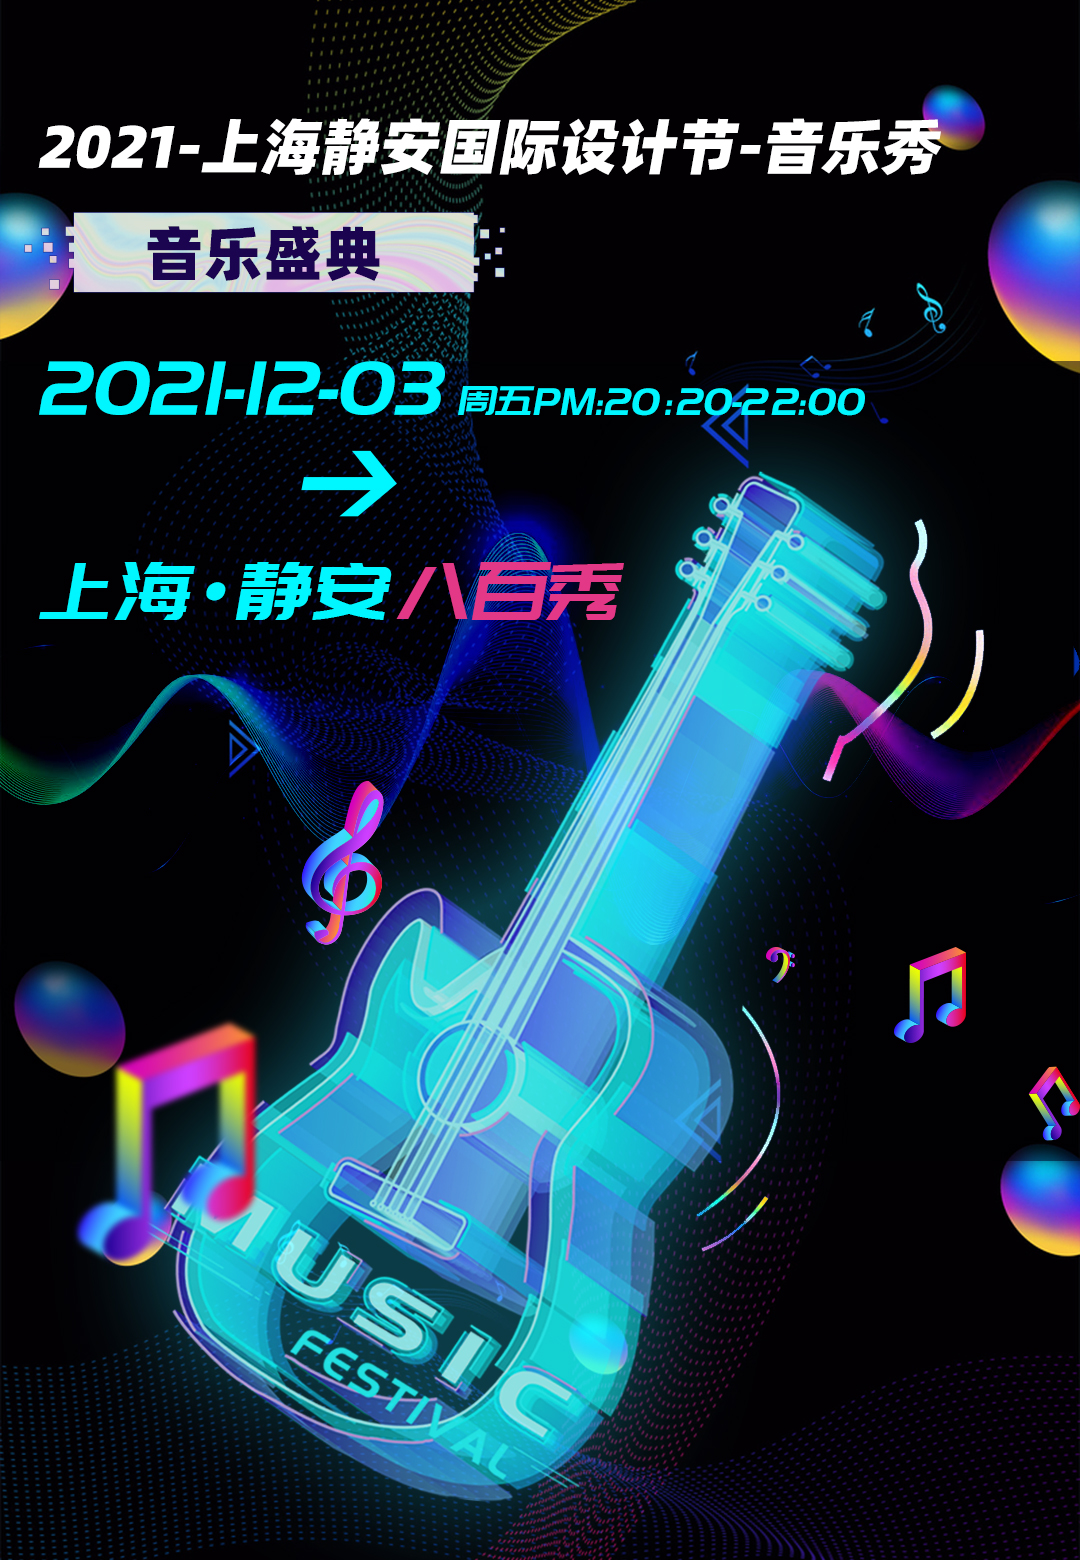 上海静安国际设计节音乐秀